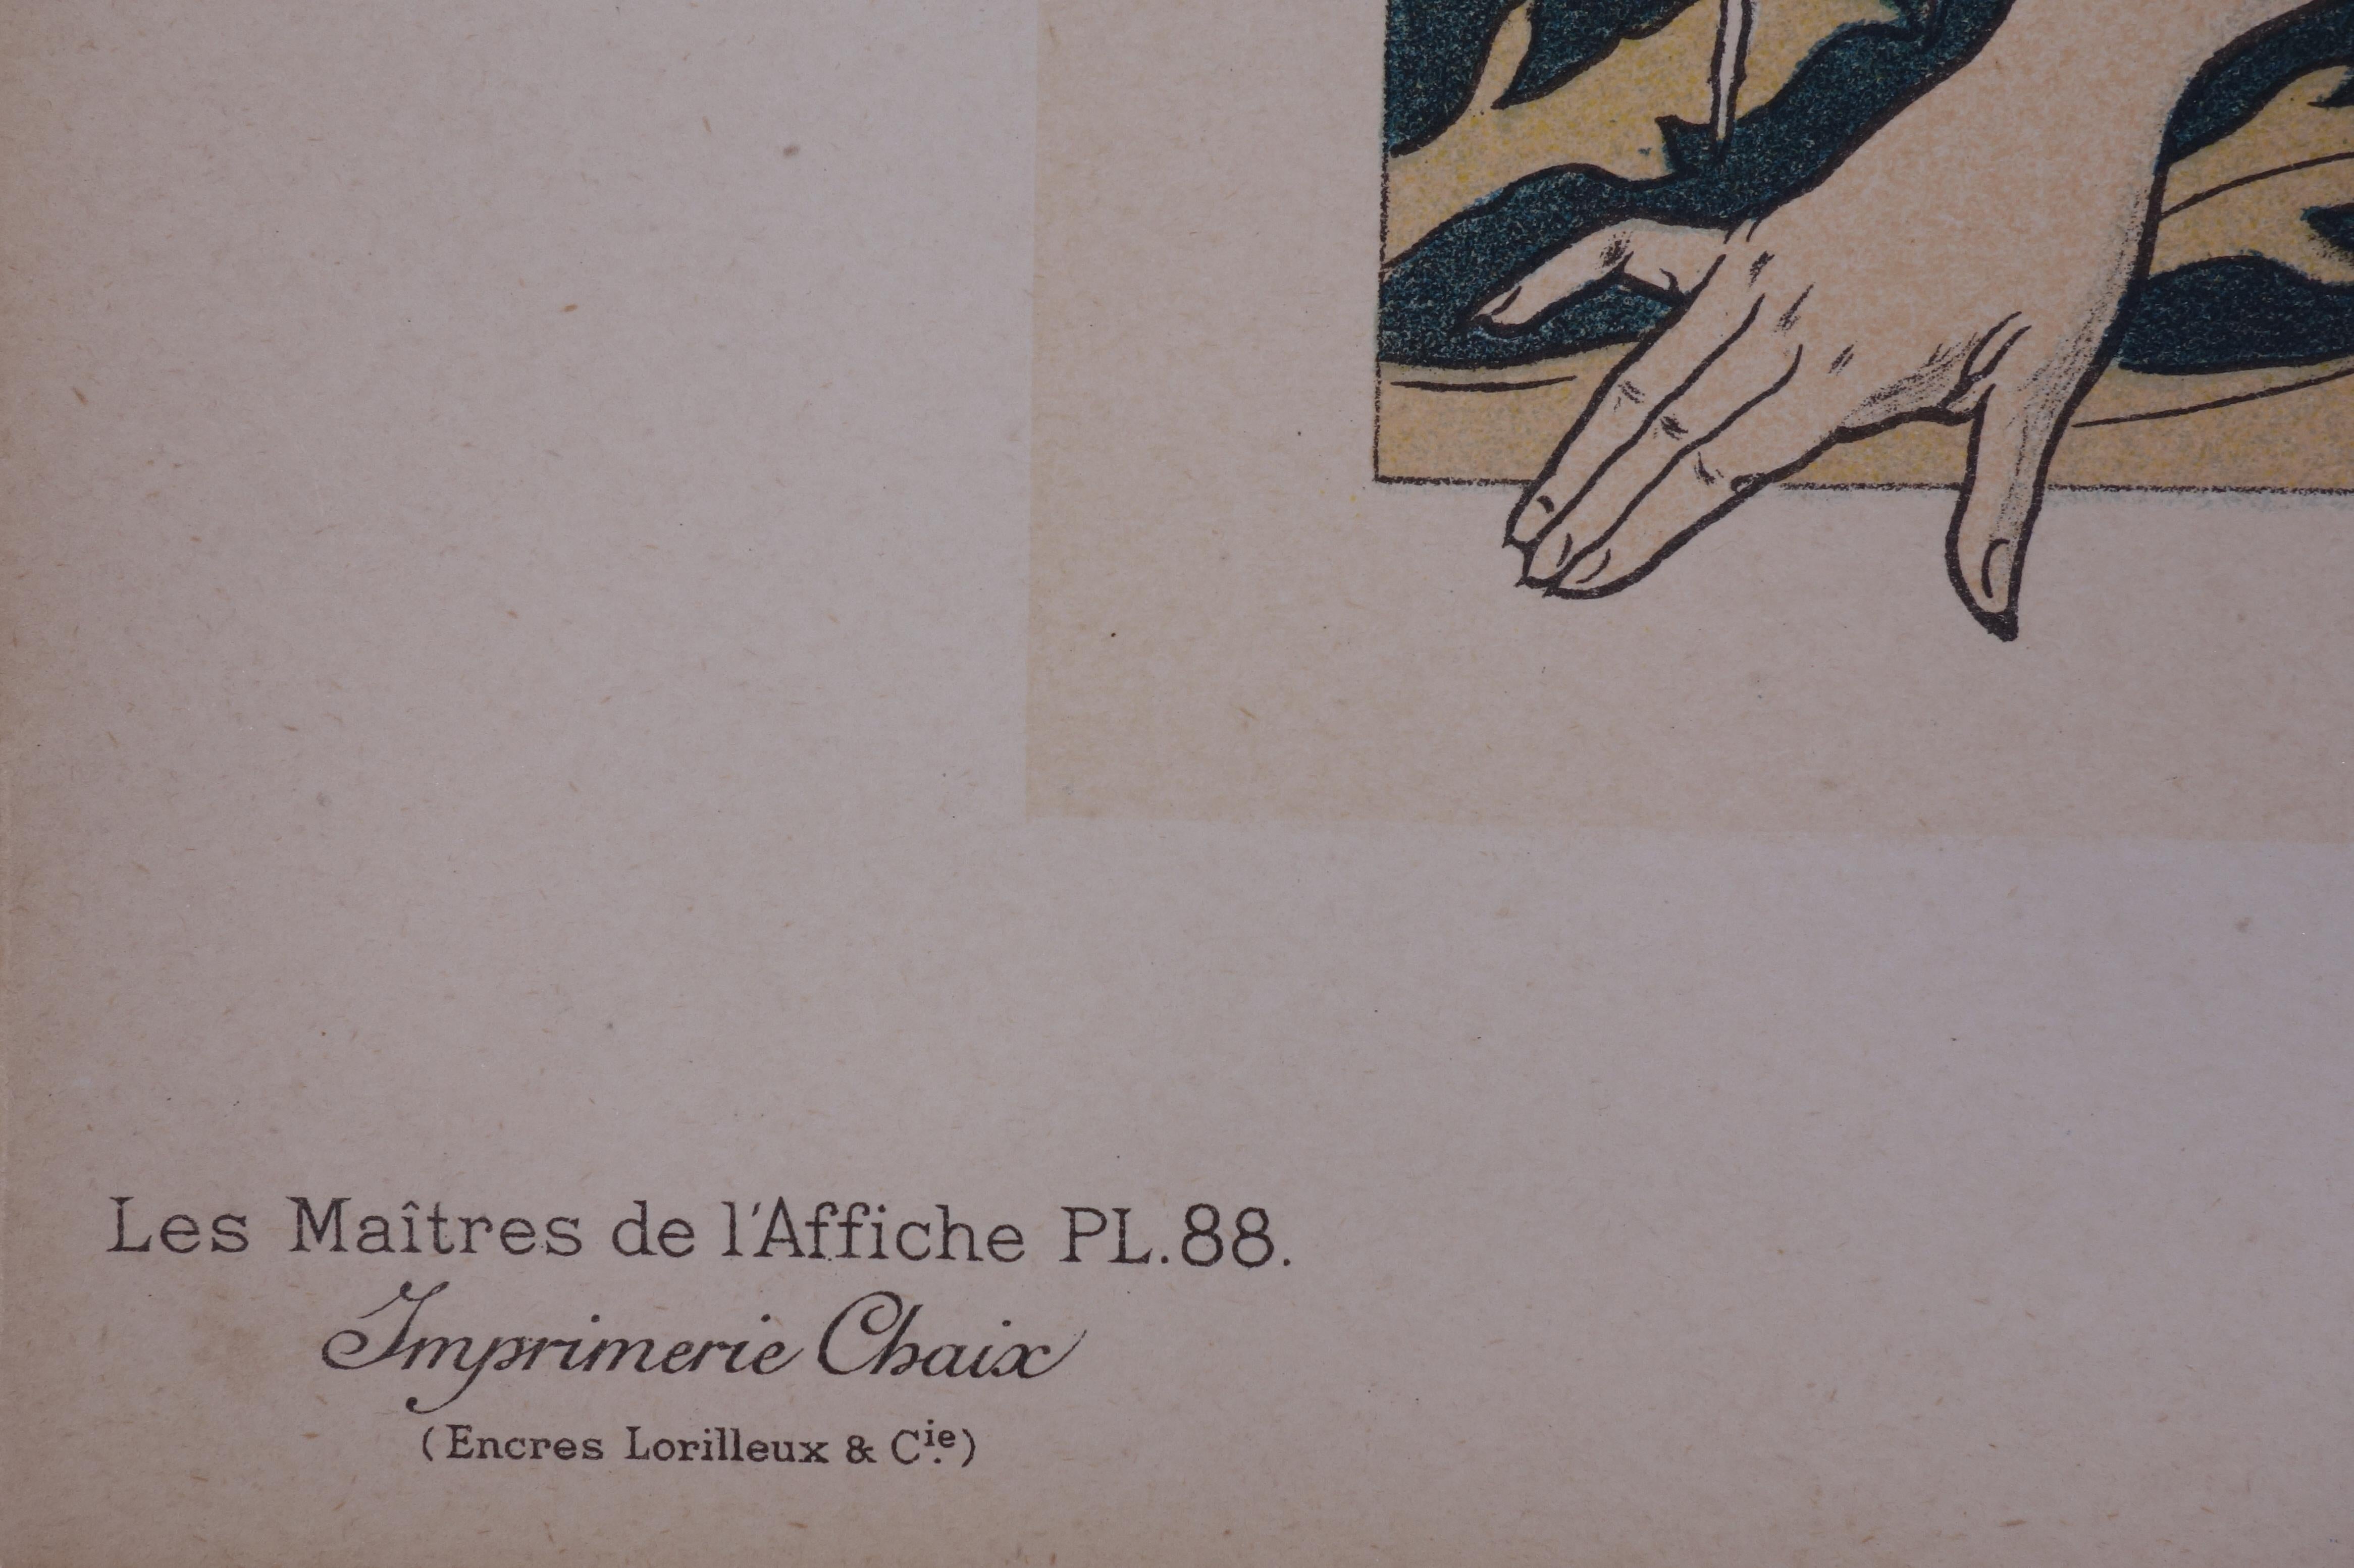 Henri PRIVAT-LIVEMONT (1861-1936)
Normandie, Cabourg, 1897

Lithographie sur pierre
Signature imprimée dans la plaque
Sur vélin 
Taille 29 x 39 cm (c. 11.4 x 15.3 in)
Porte le cachet aveugle de l'éditeur dans le coin inférieur droit.

INFORMATION :